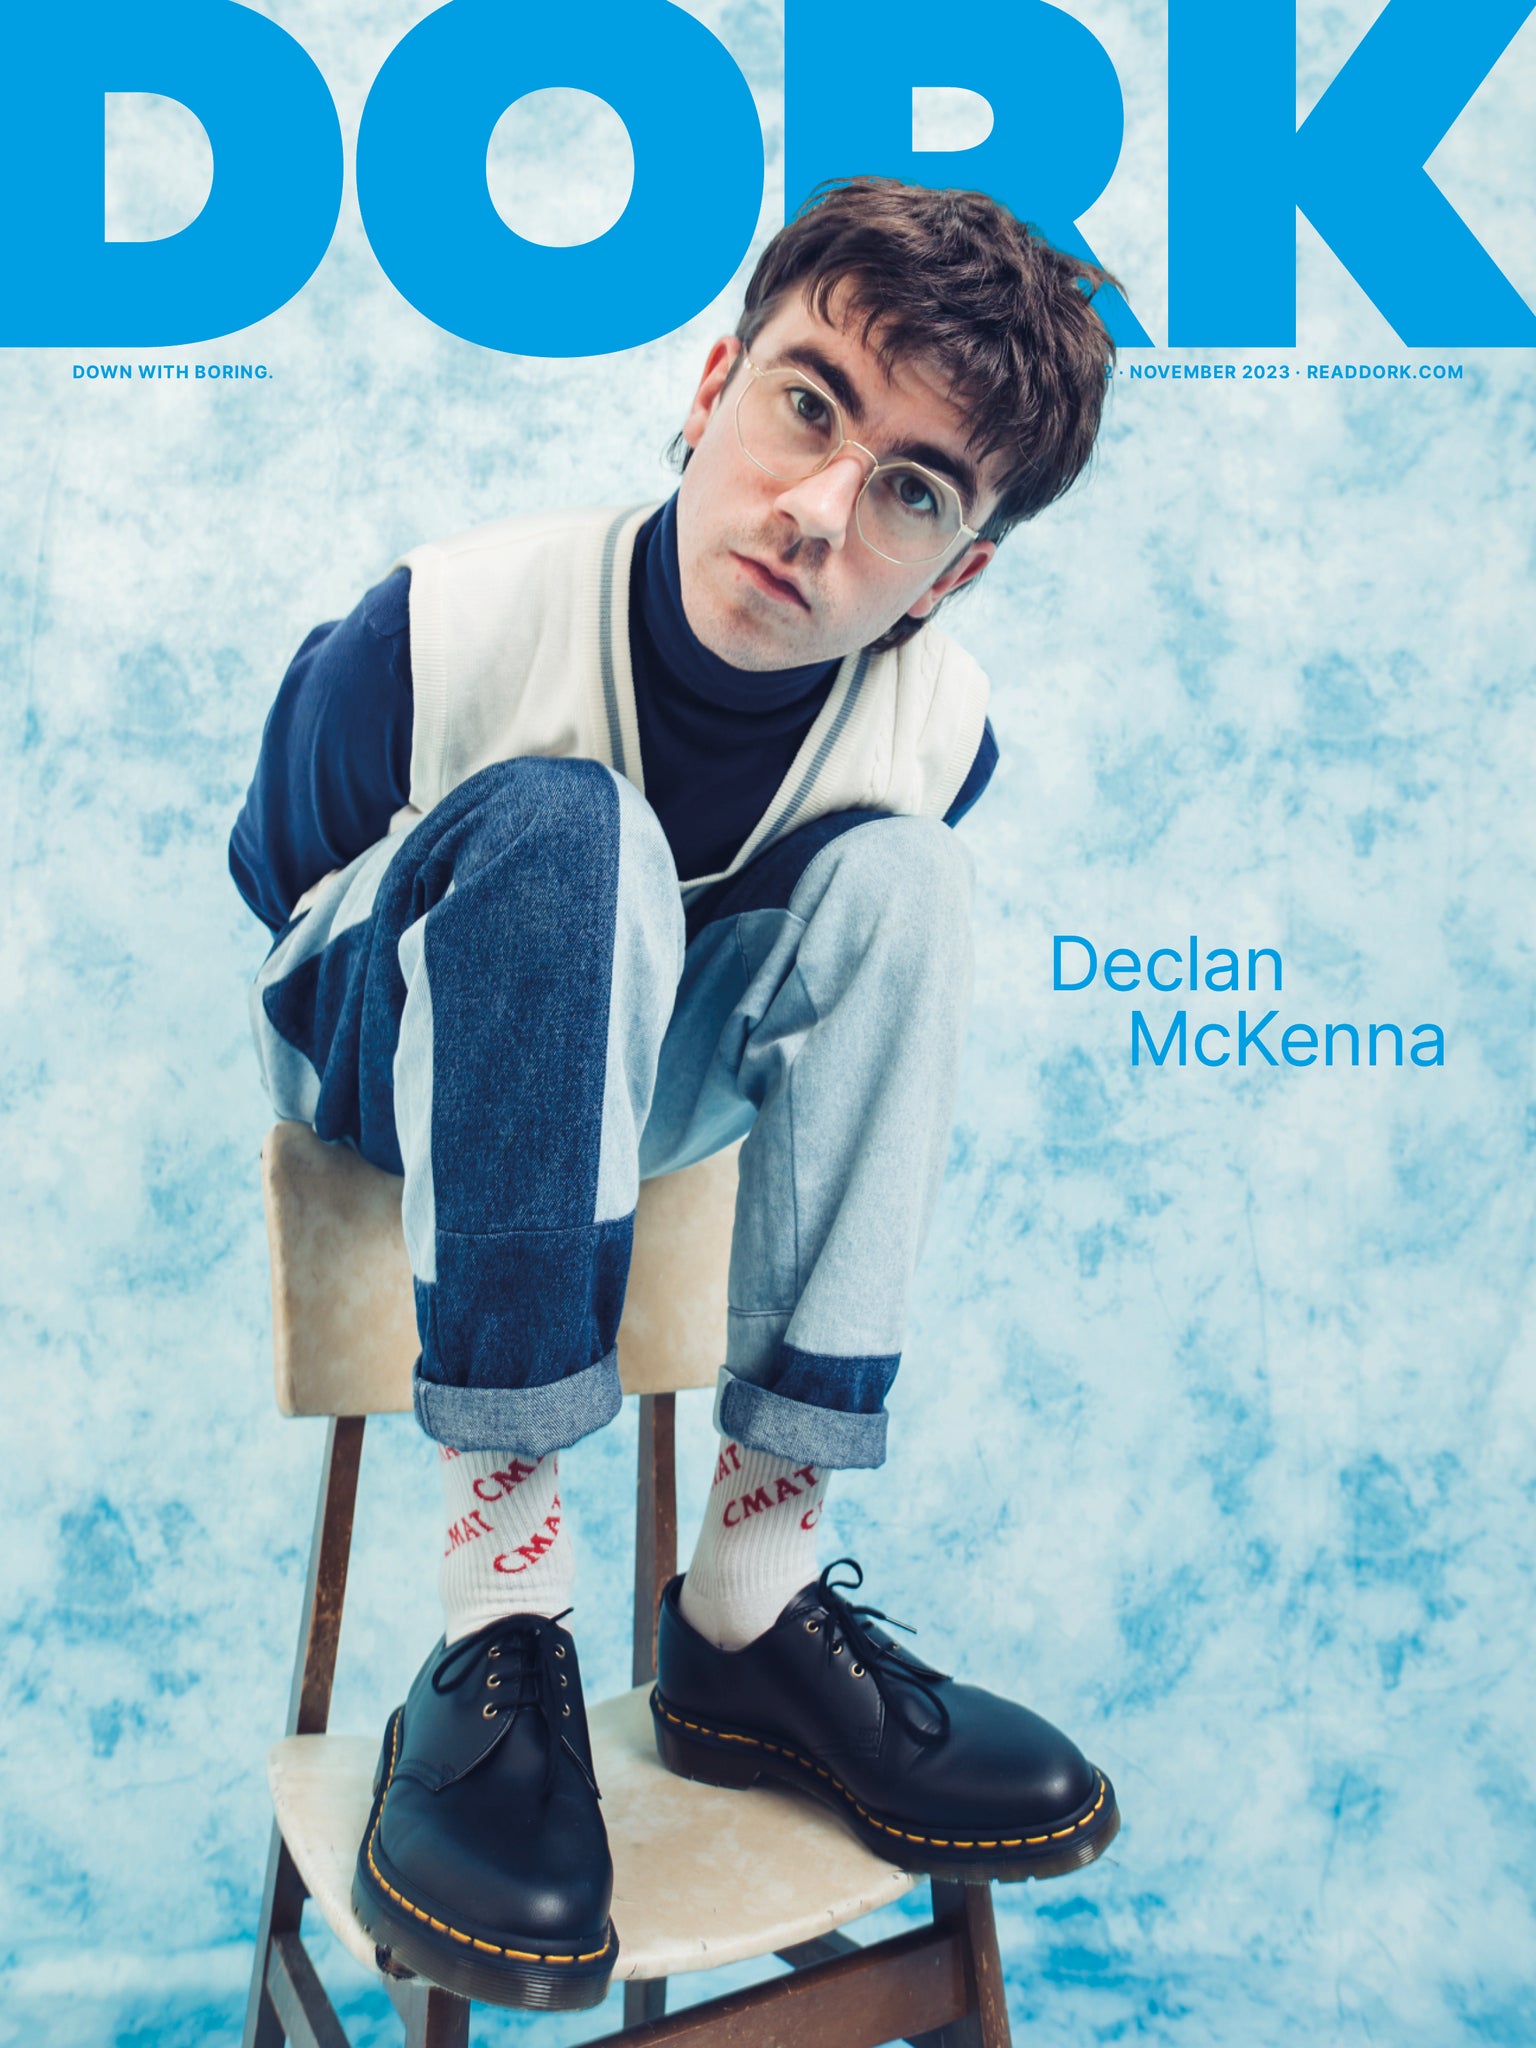 Dork, November 2023 (Declan McKenna cover)